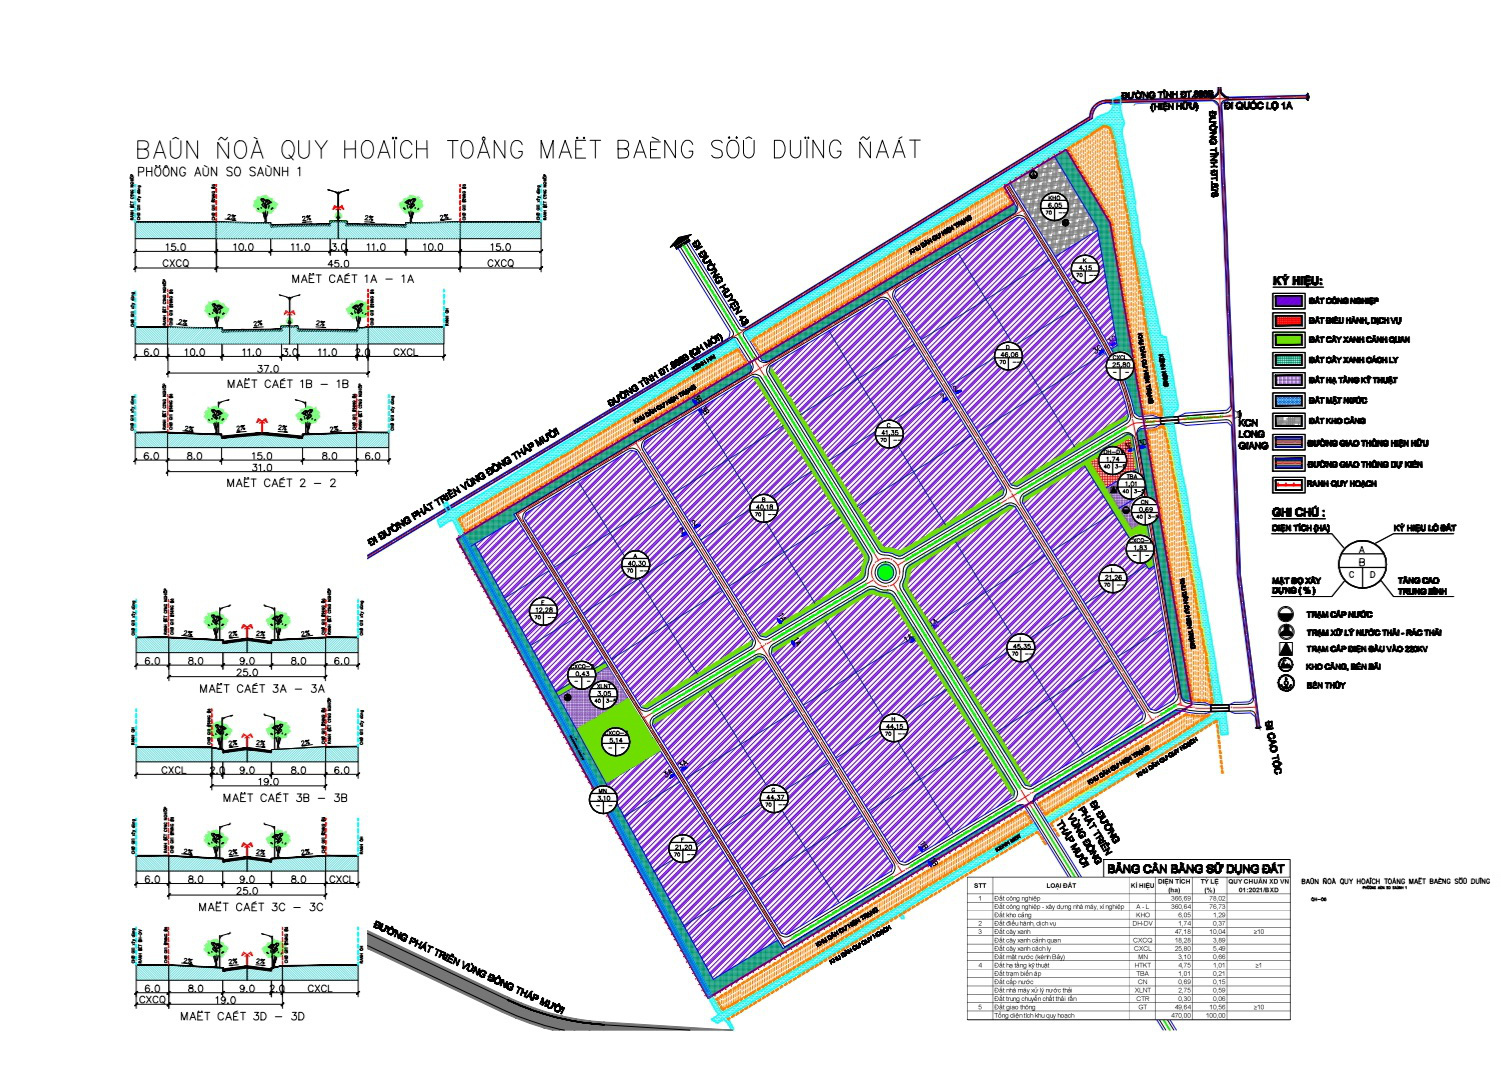 Bản đồ quy hoạch dự án đầu tư xây dựng và kinh doanh kết cấu hạ tầng Khu công nghiệp Tân Phước 1 - Ảnh: HOÀI THƯƠNG